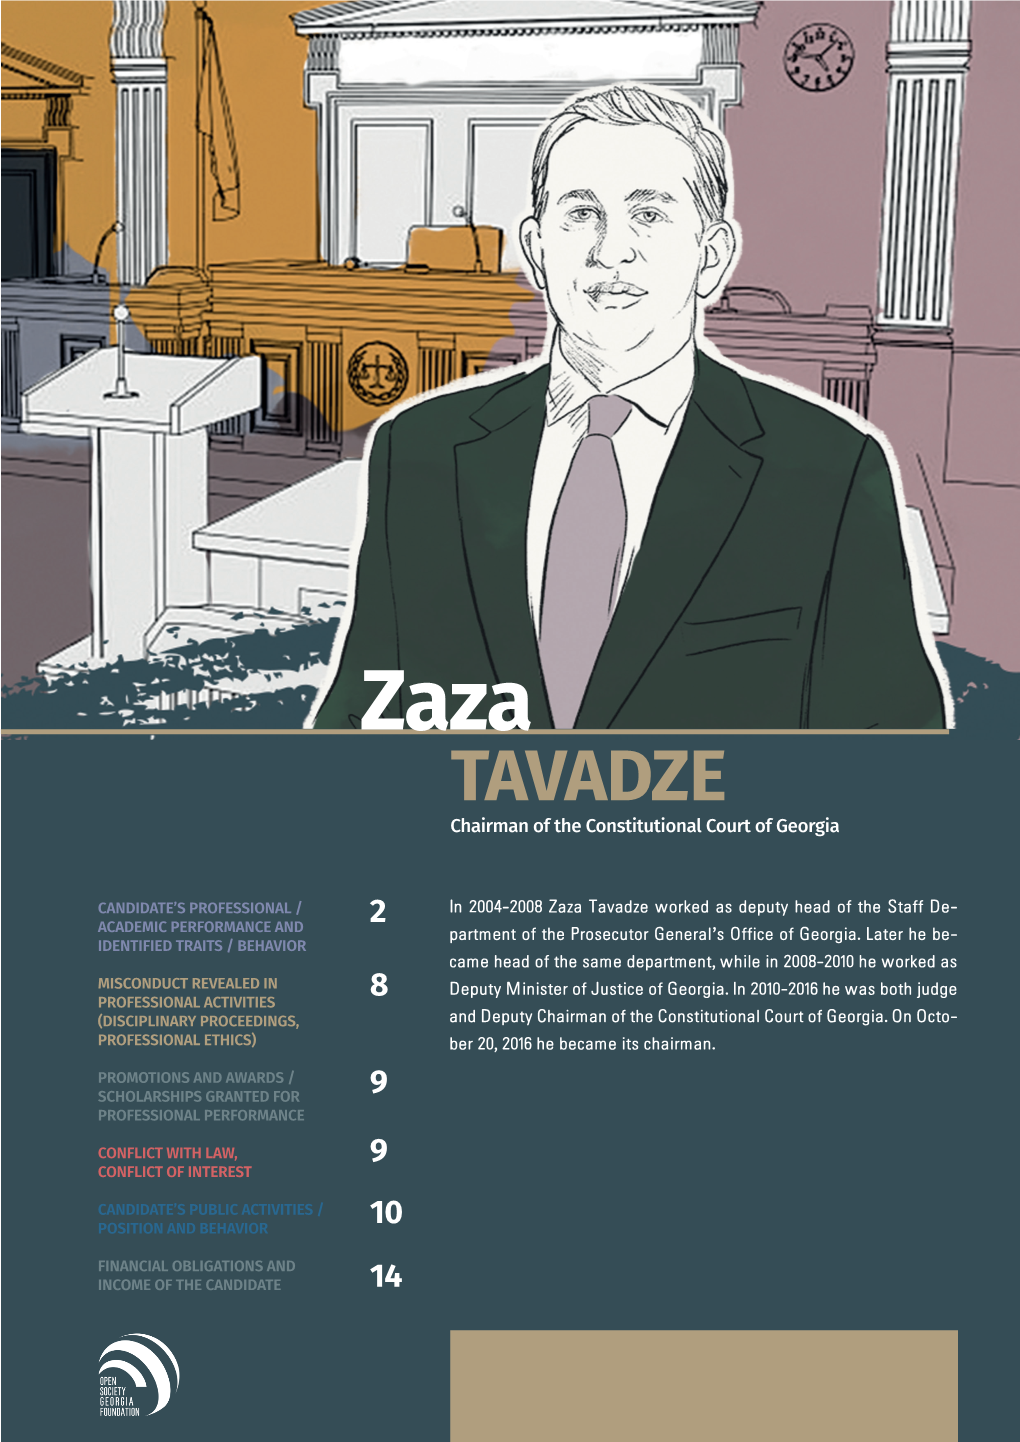 TAVADZE of the Constitutional Court of Georgia